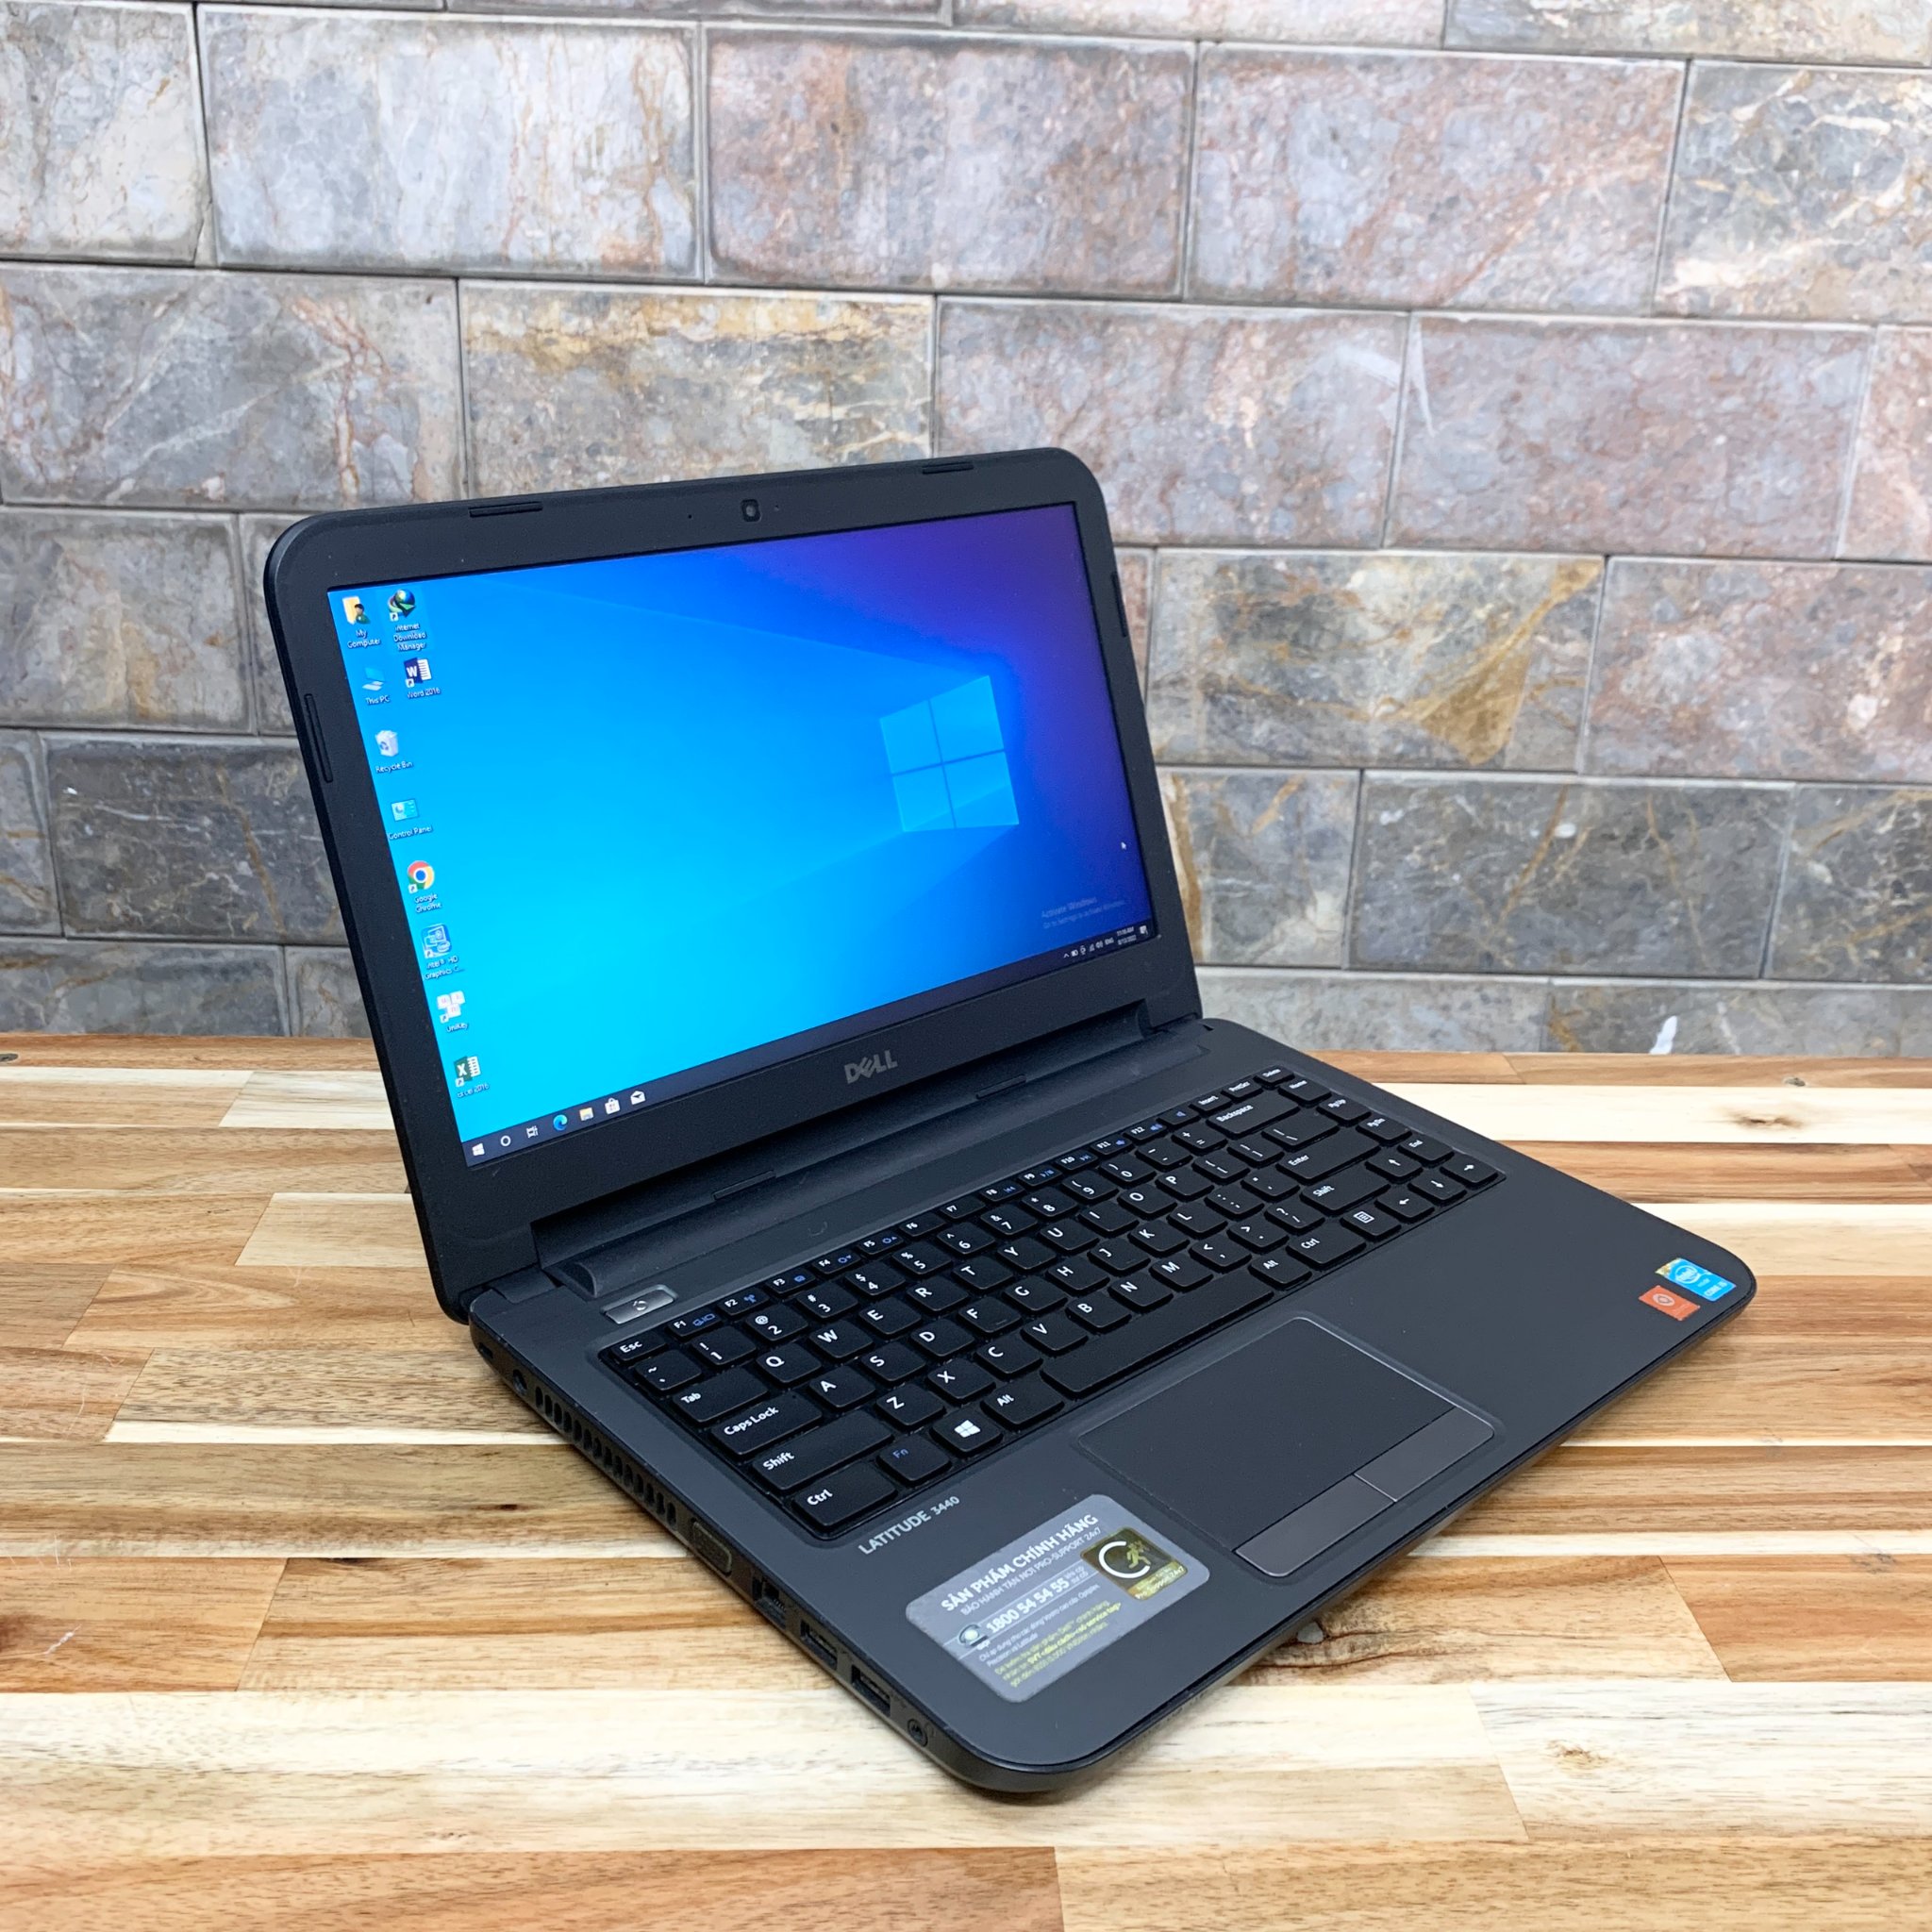 Dell Latitude 3440 - laptop trả góp giá rẻ - Laptop trả góp không cần đưa  trước - laptop trả góp Hồ Chí Minh - laptop trả góp Tân Phú - Laptop Trả Góp